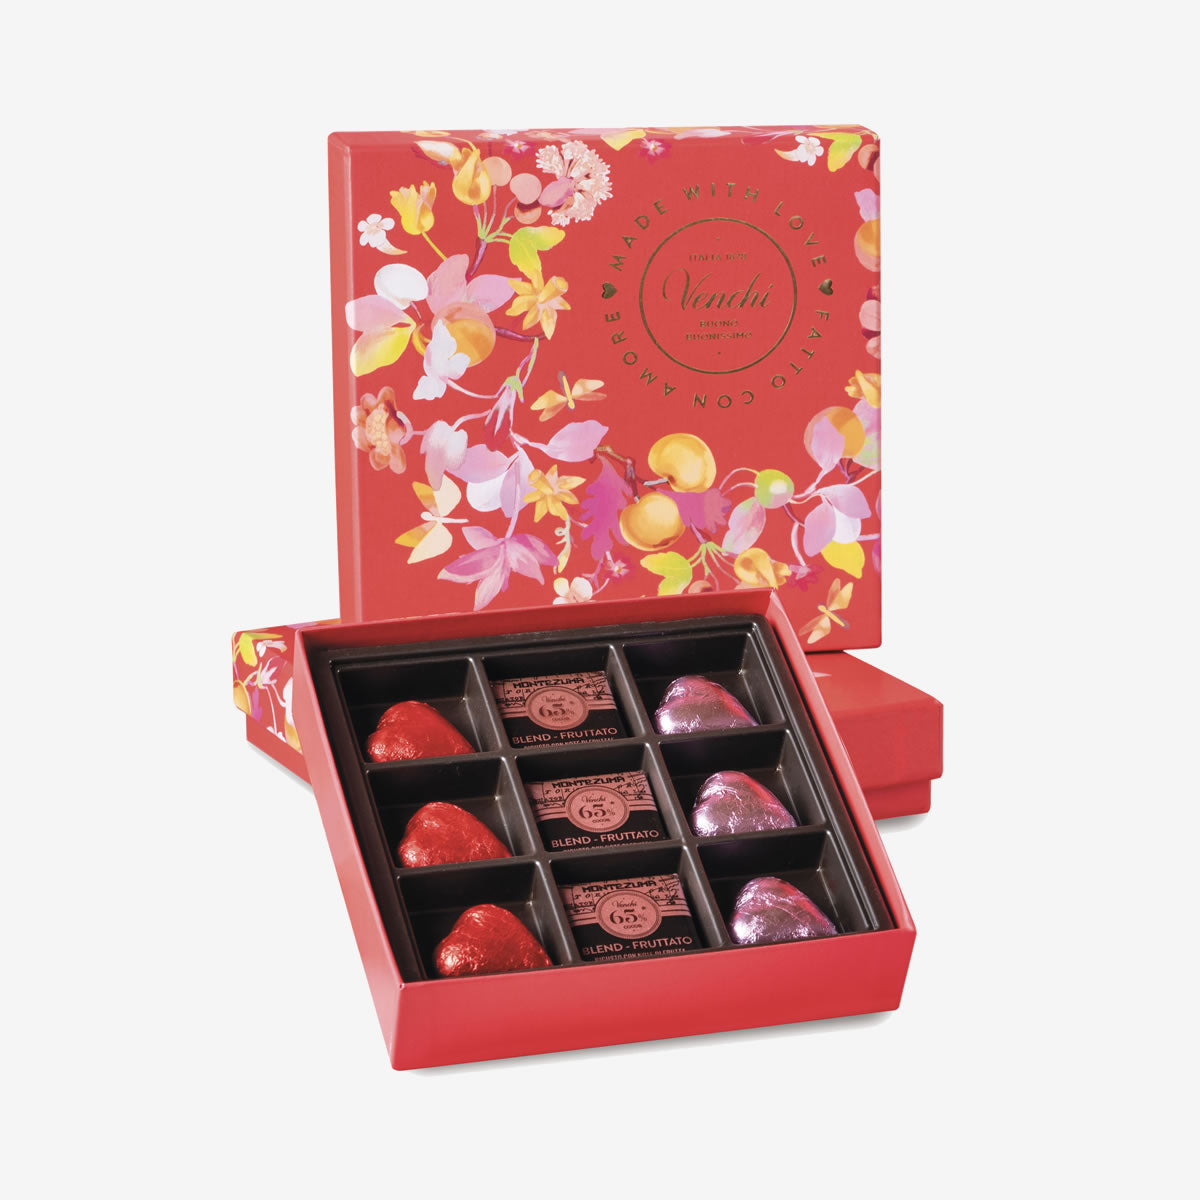 San Valentino si festeggia con le proposte al cioccolato Venchi